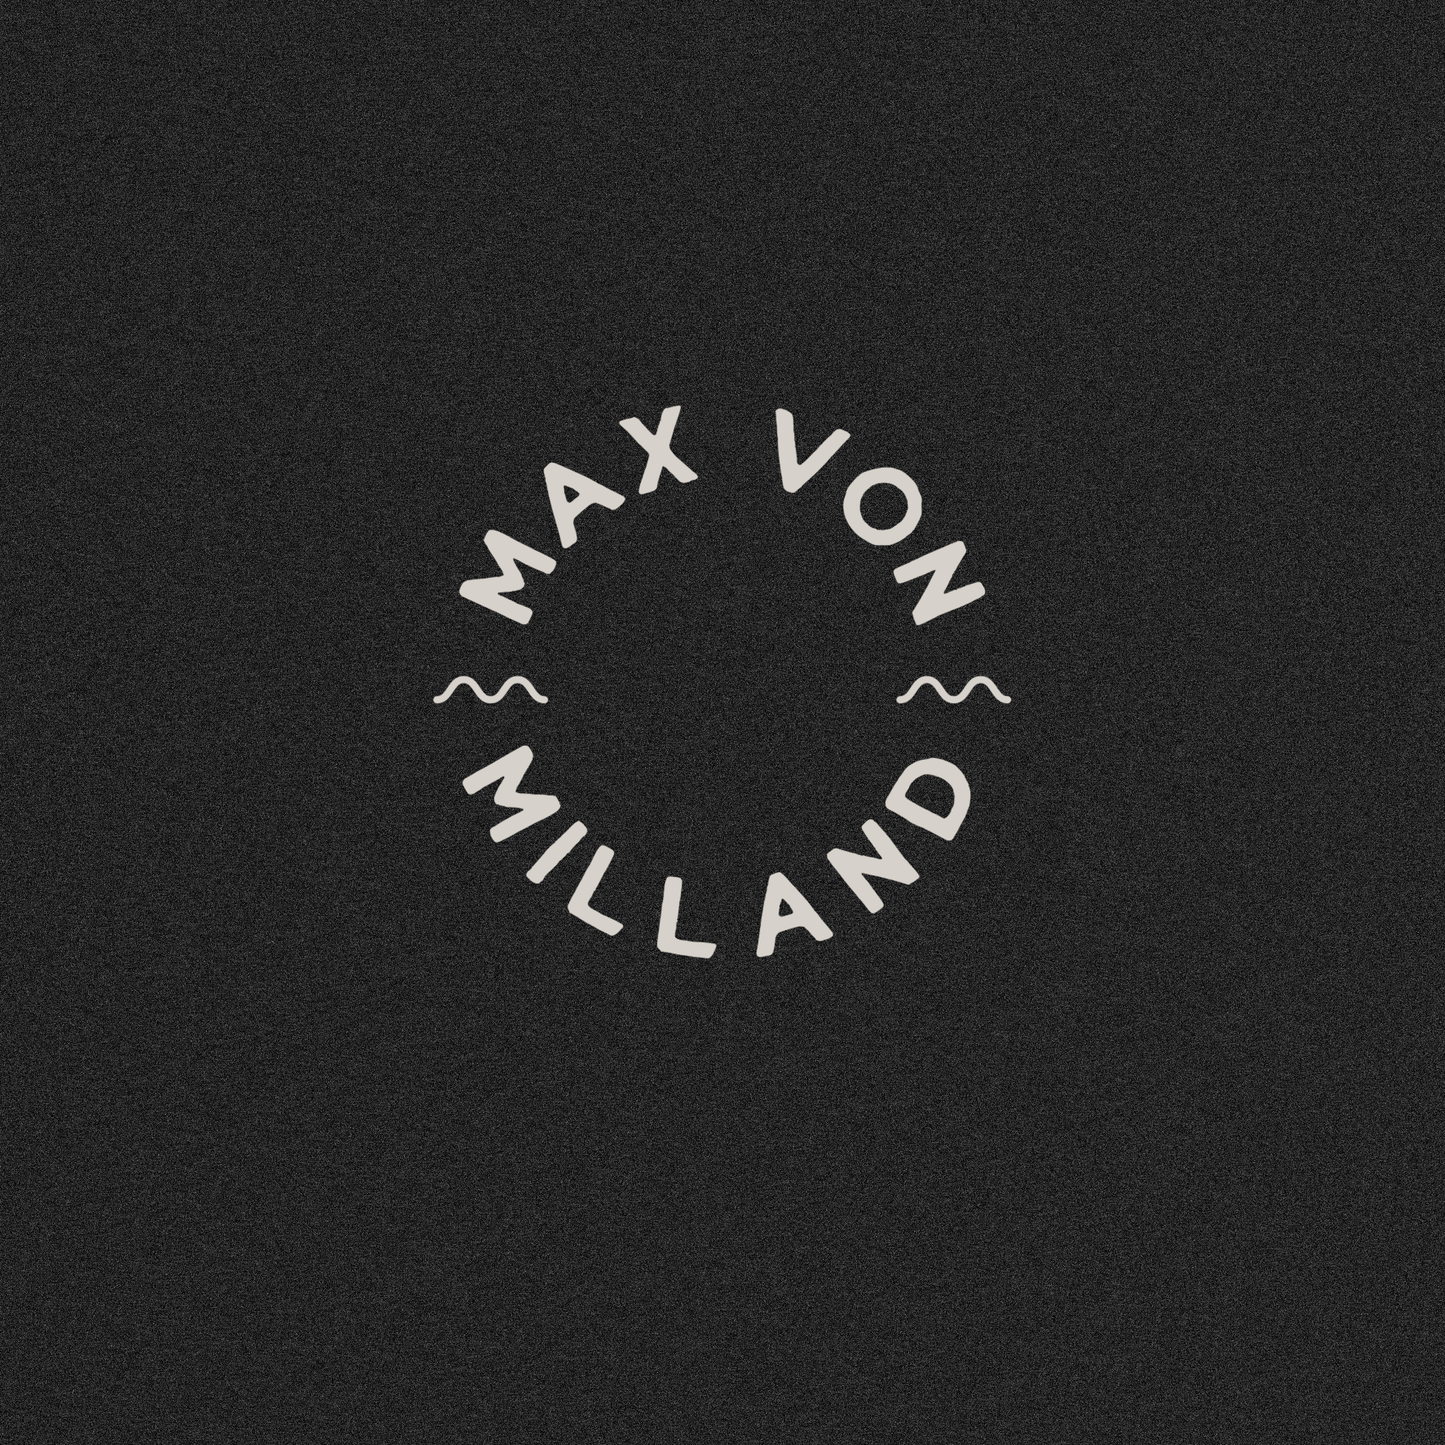 T-SHIRT | Max von Milland "EISACK" Unisex Dark Heather Grey